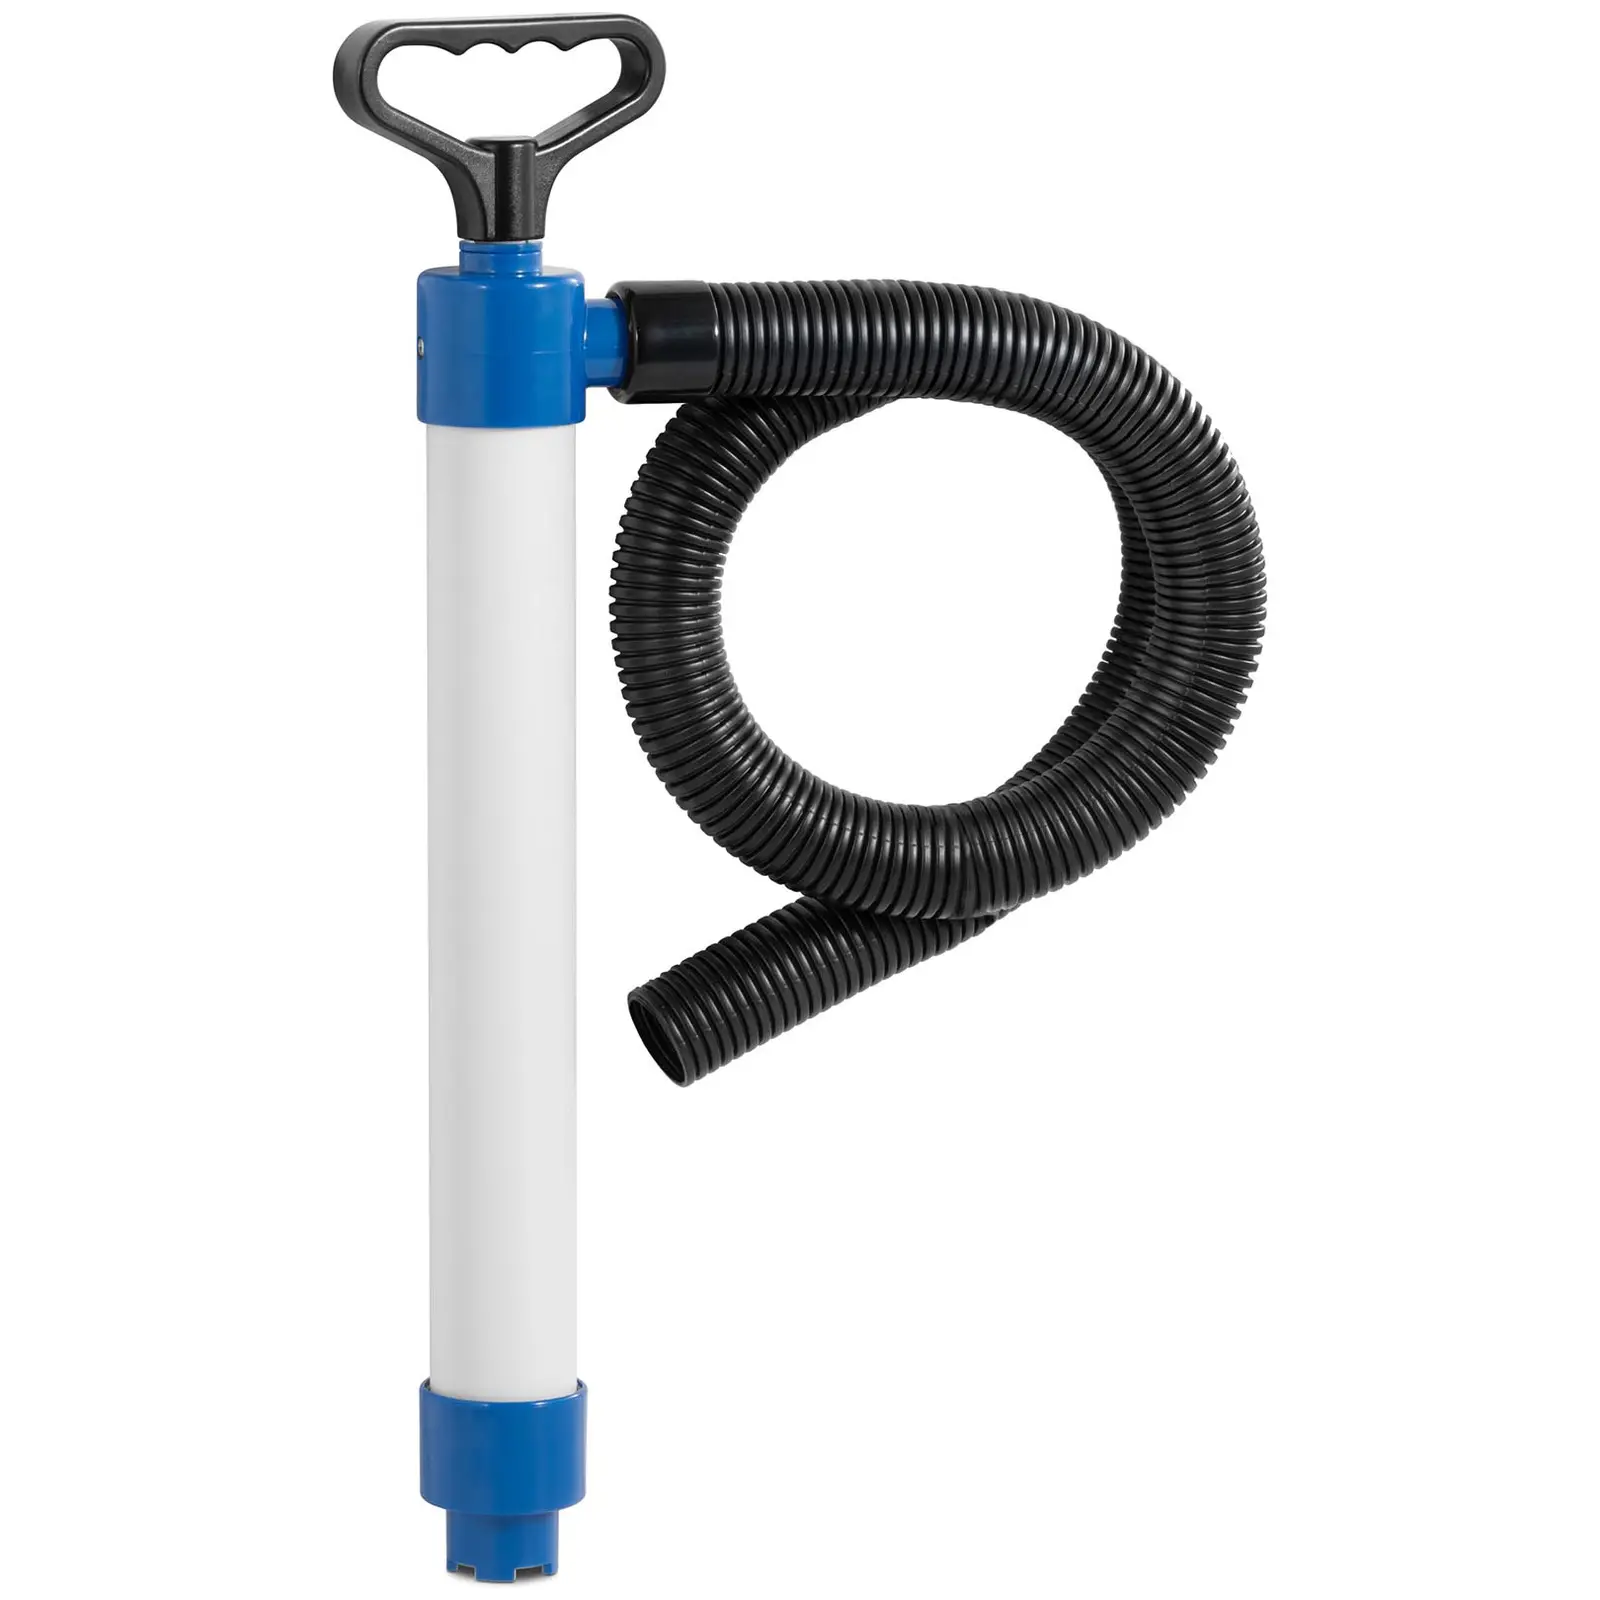 Manuell vannpumpe lensepumpe - 0,5 m leveringshøyde - 45 L/min strømningshastighet - inkl. slange